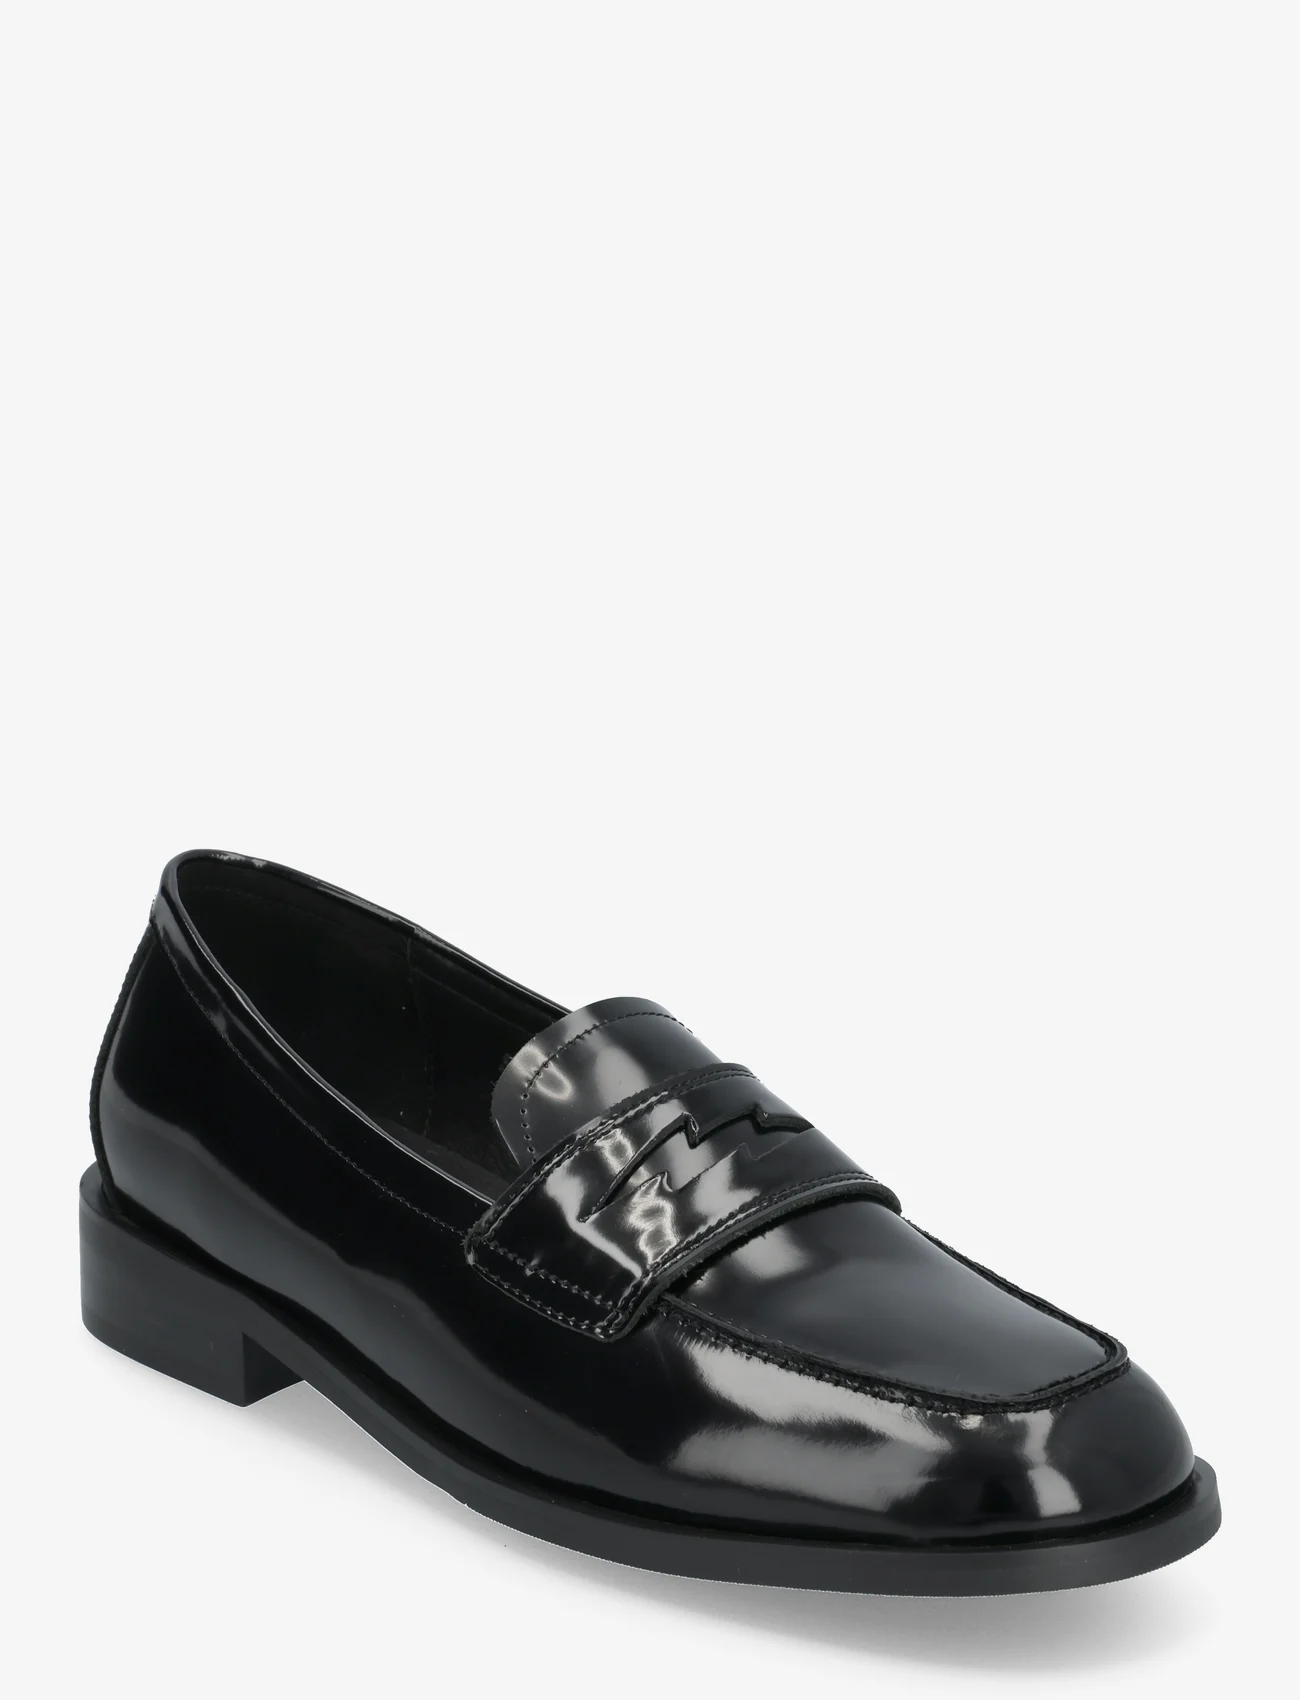 Sofie Schnoor - Shoe - loafers - black - 0